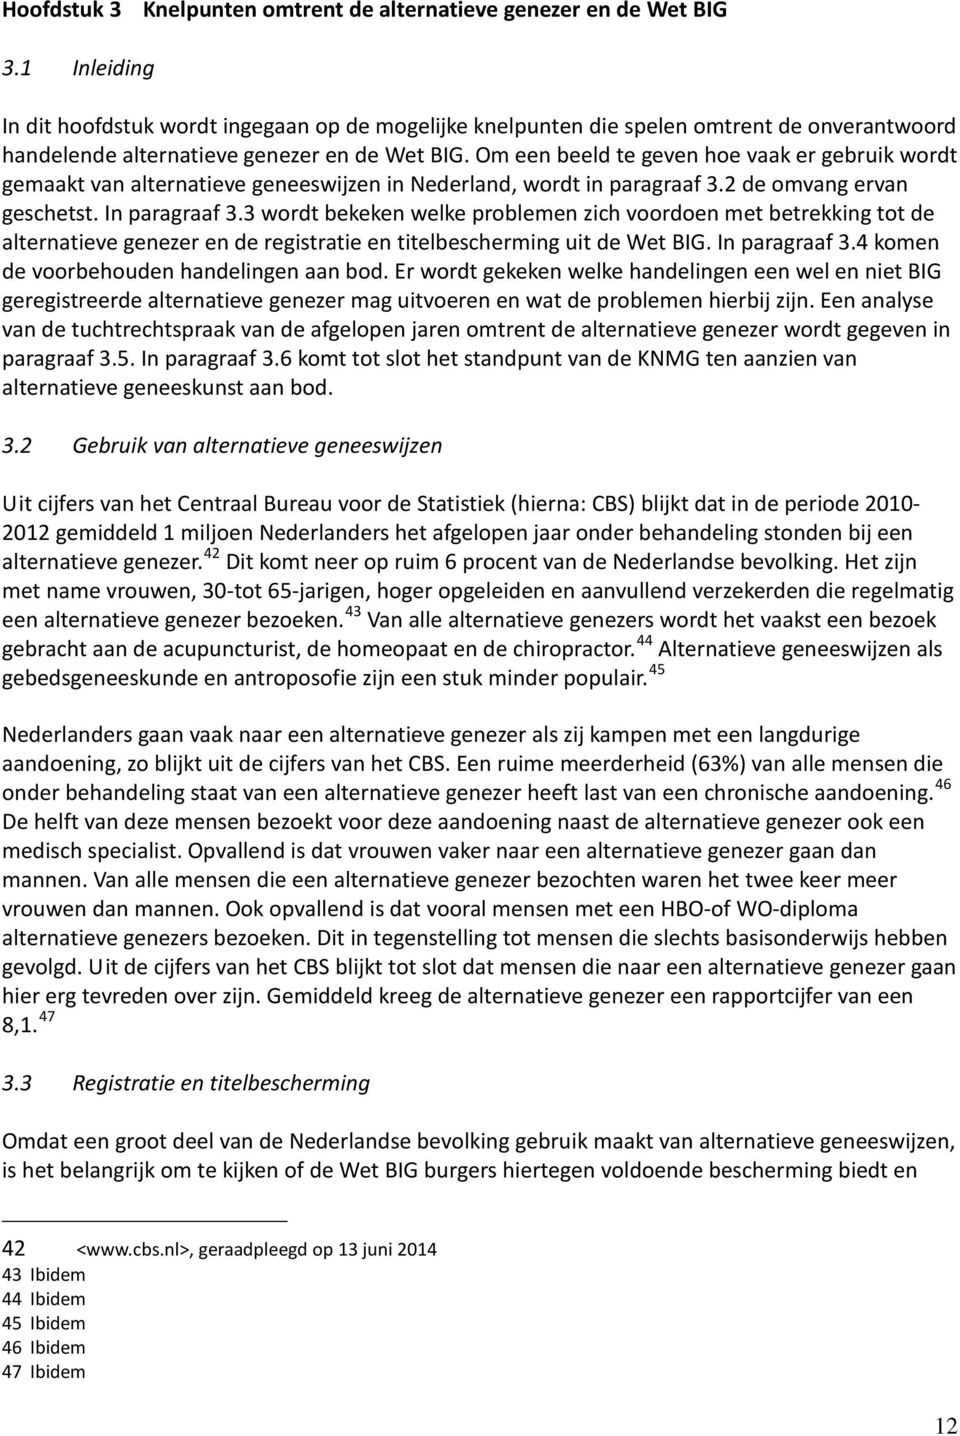 Om een beeld te geven hoe vaak er gebruik wordt gemaakt van alternatieve geneeswijzen in Nederland, wordt in paragraaf 3.2 de omvang ervan geschetst. In paragraaf 3.